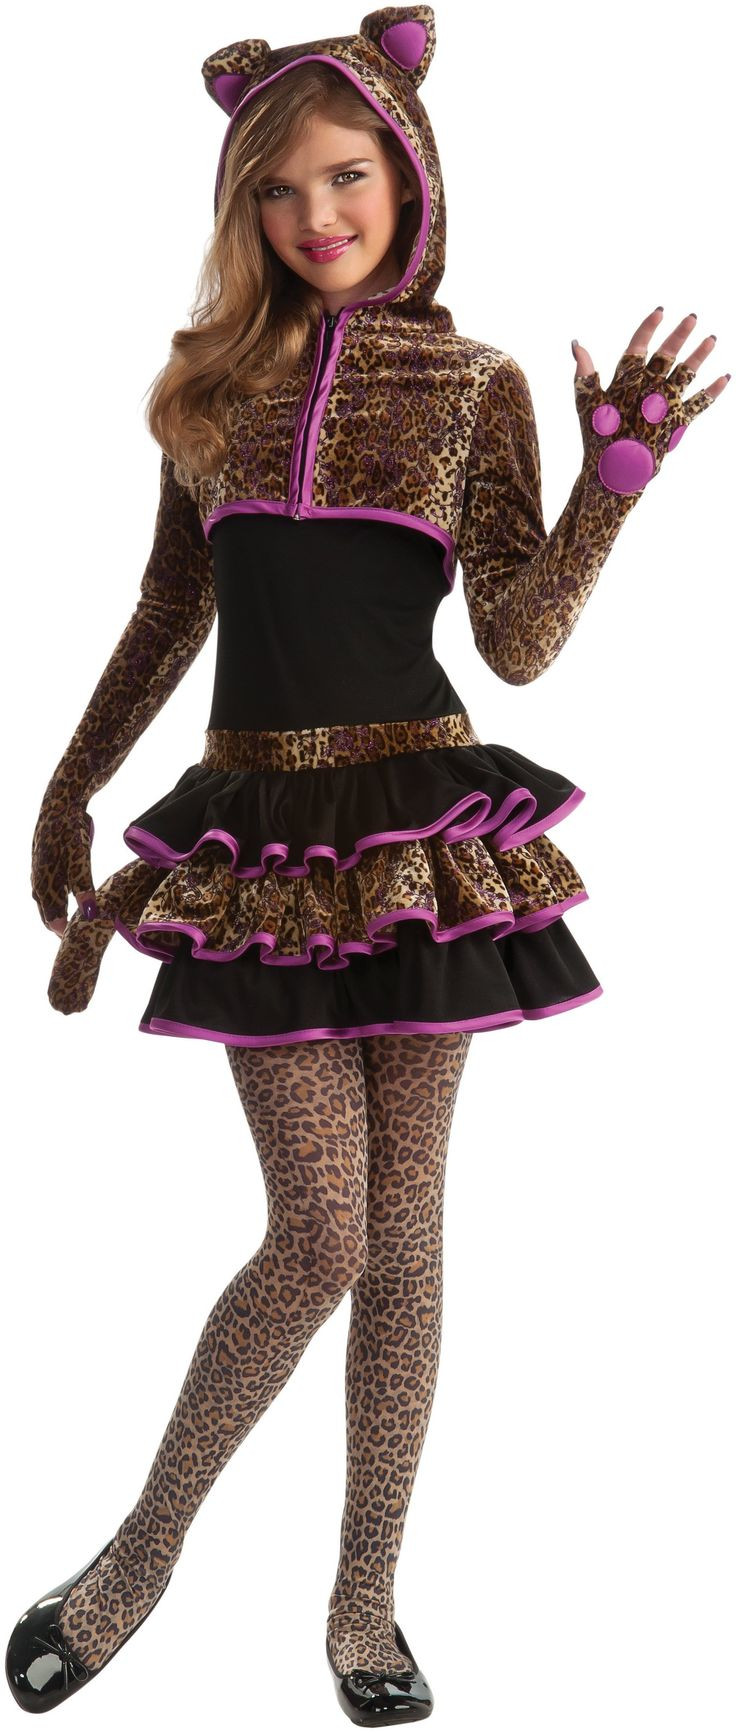 Tween Halloween Party Ideas
 7 best tween Halloween costumes images on Pinterest